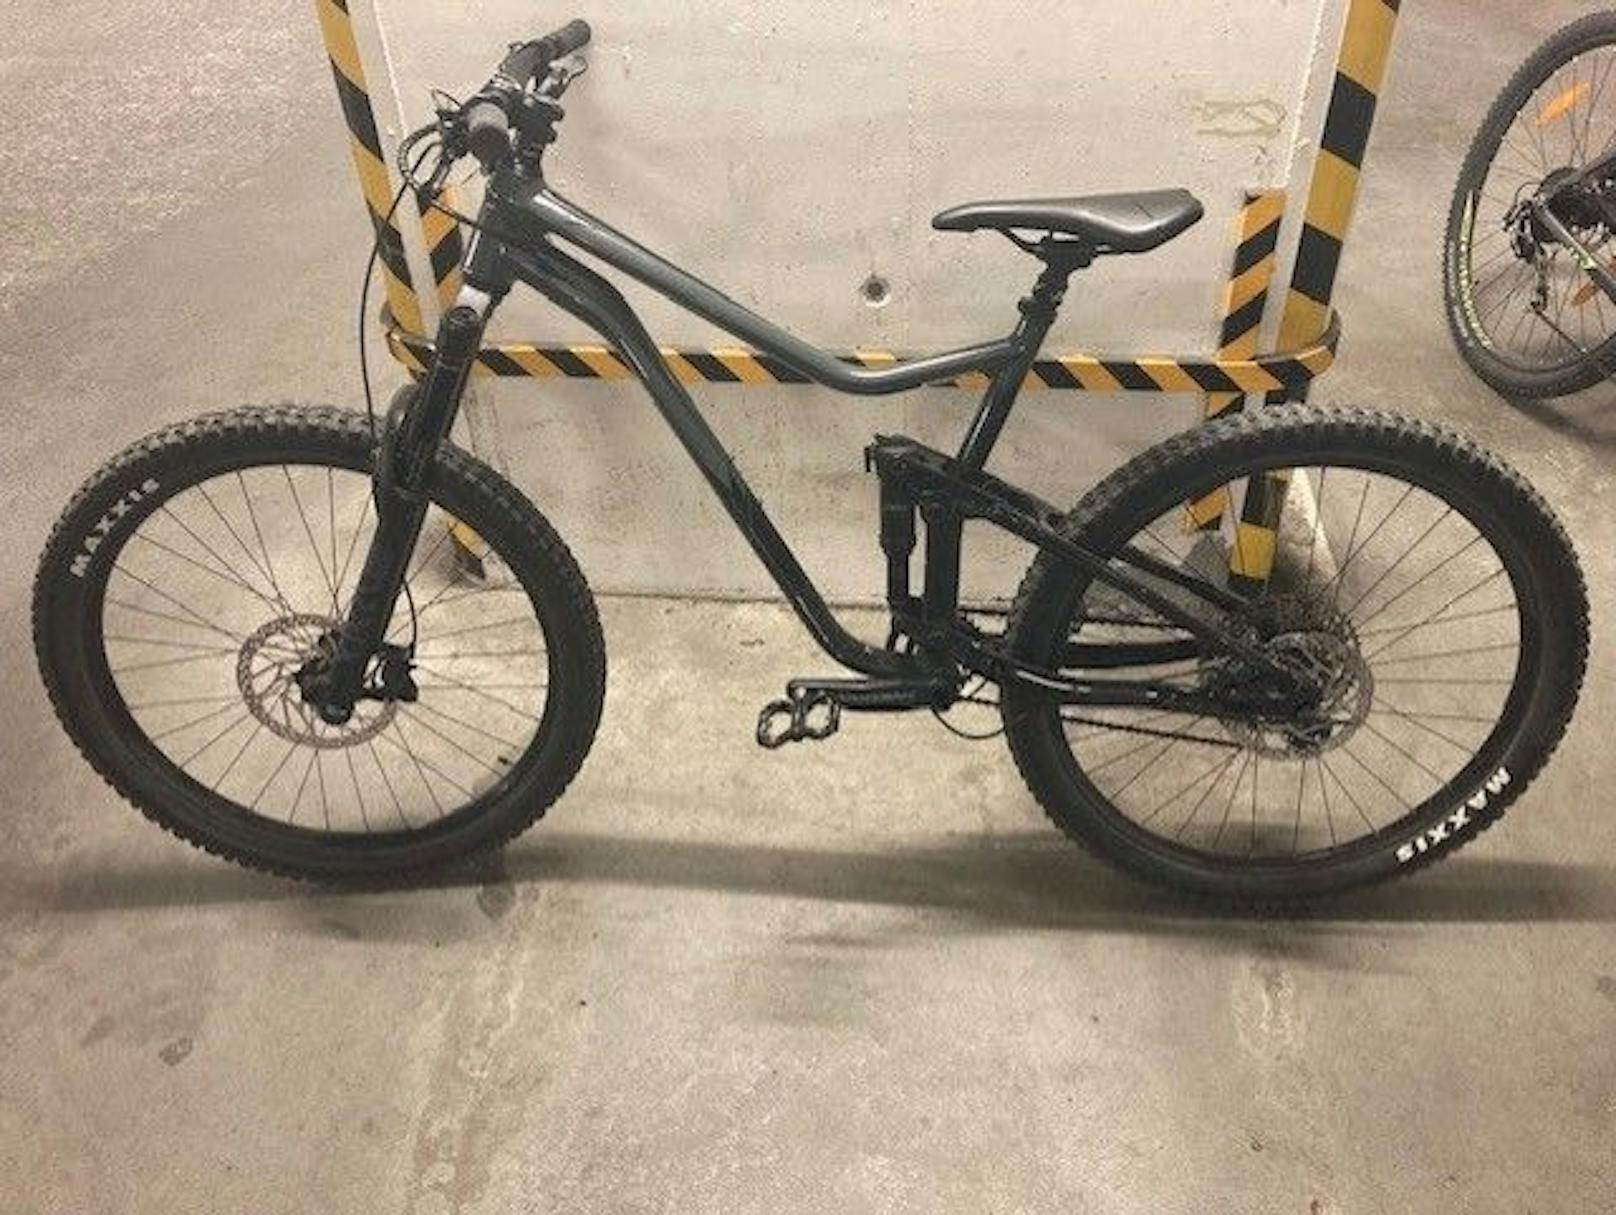 In Feldkirch konnte die Polizei zwei gestohlene Mountainbikes sicherstellen – die Suche nach den Besitzern läuft.